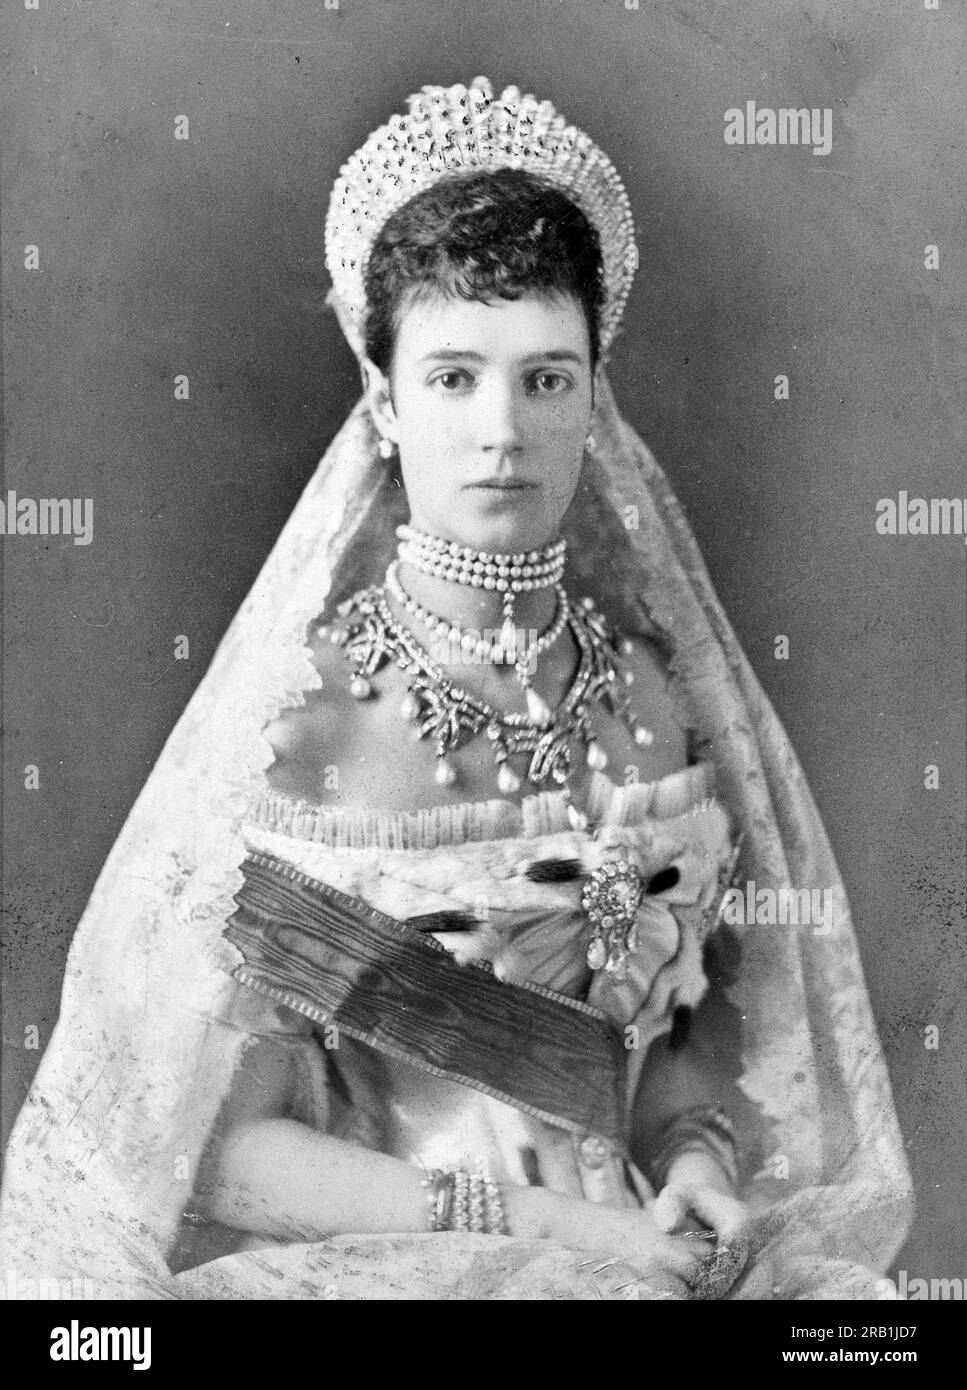 L'impératrice Maria Feodorovna, Maria Feodorovna, Maria Feodorovna, Maria Feodorovna (1847 – 1928), princesse Dagmar de Danemark, fut impératrice de Russie de 1881 à 1894 en tant qu'épouse de l'empereur Alexandre III Banque D'Images